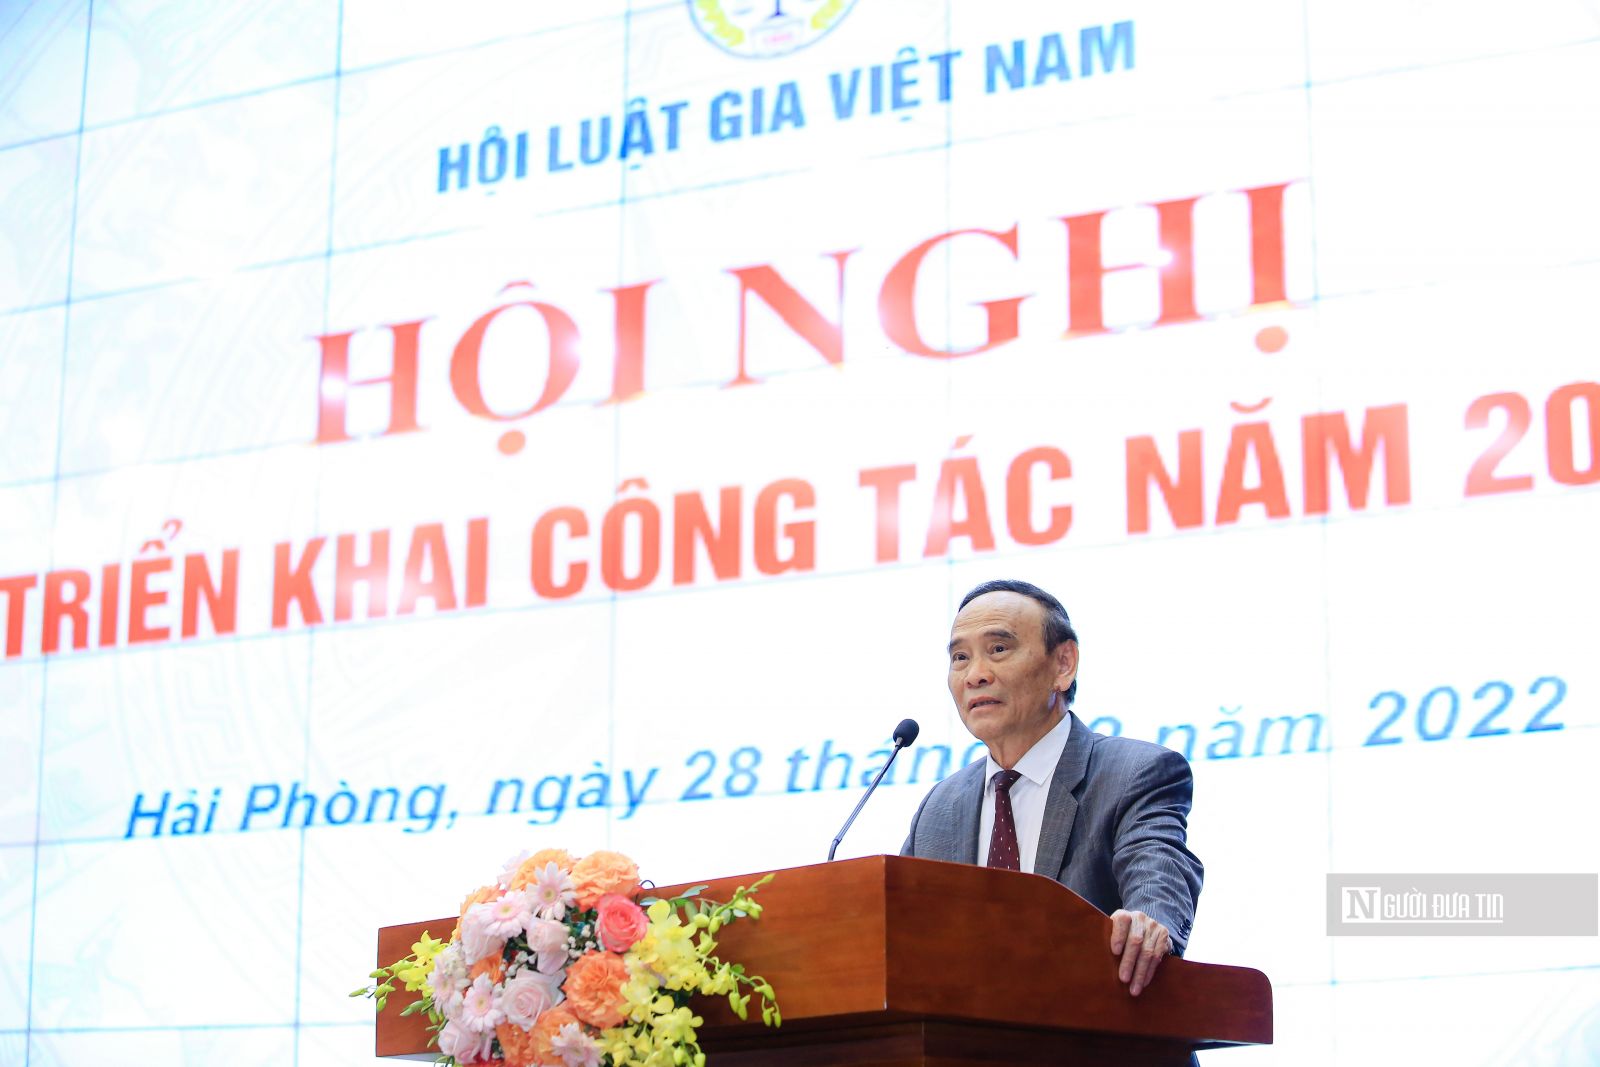 Xác định tâm thế tự tin trong triển khai công tác Hội Luật gia Việt Nam